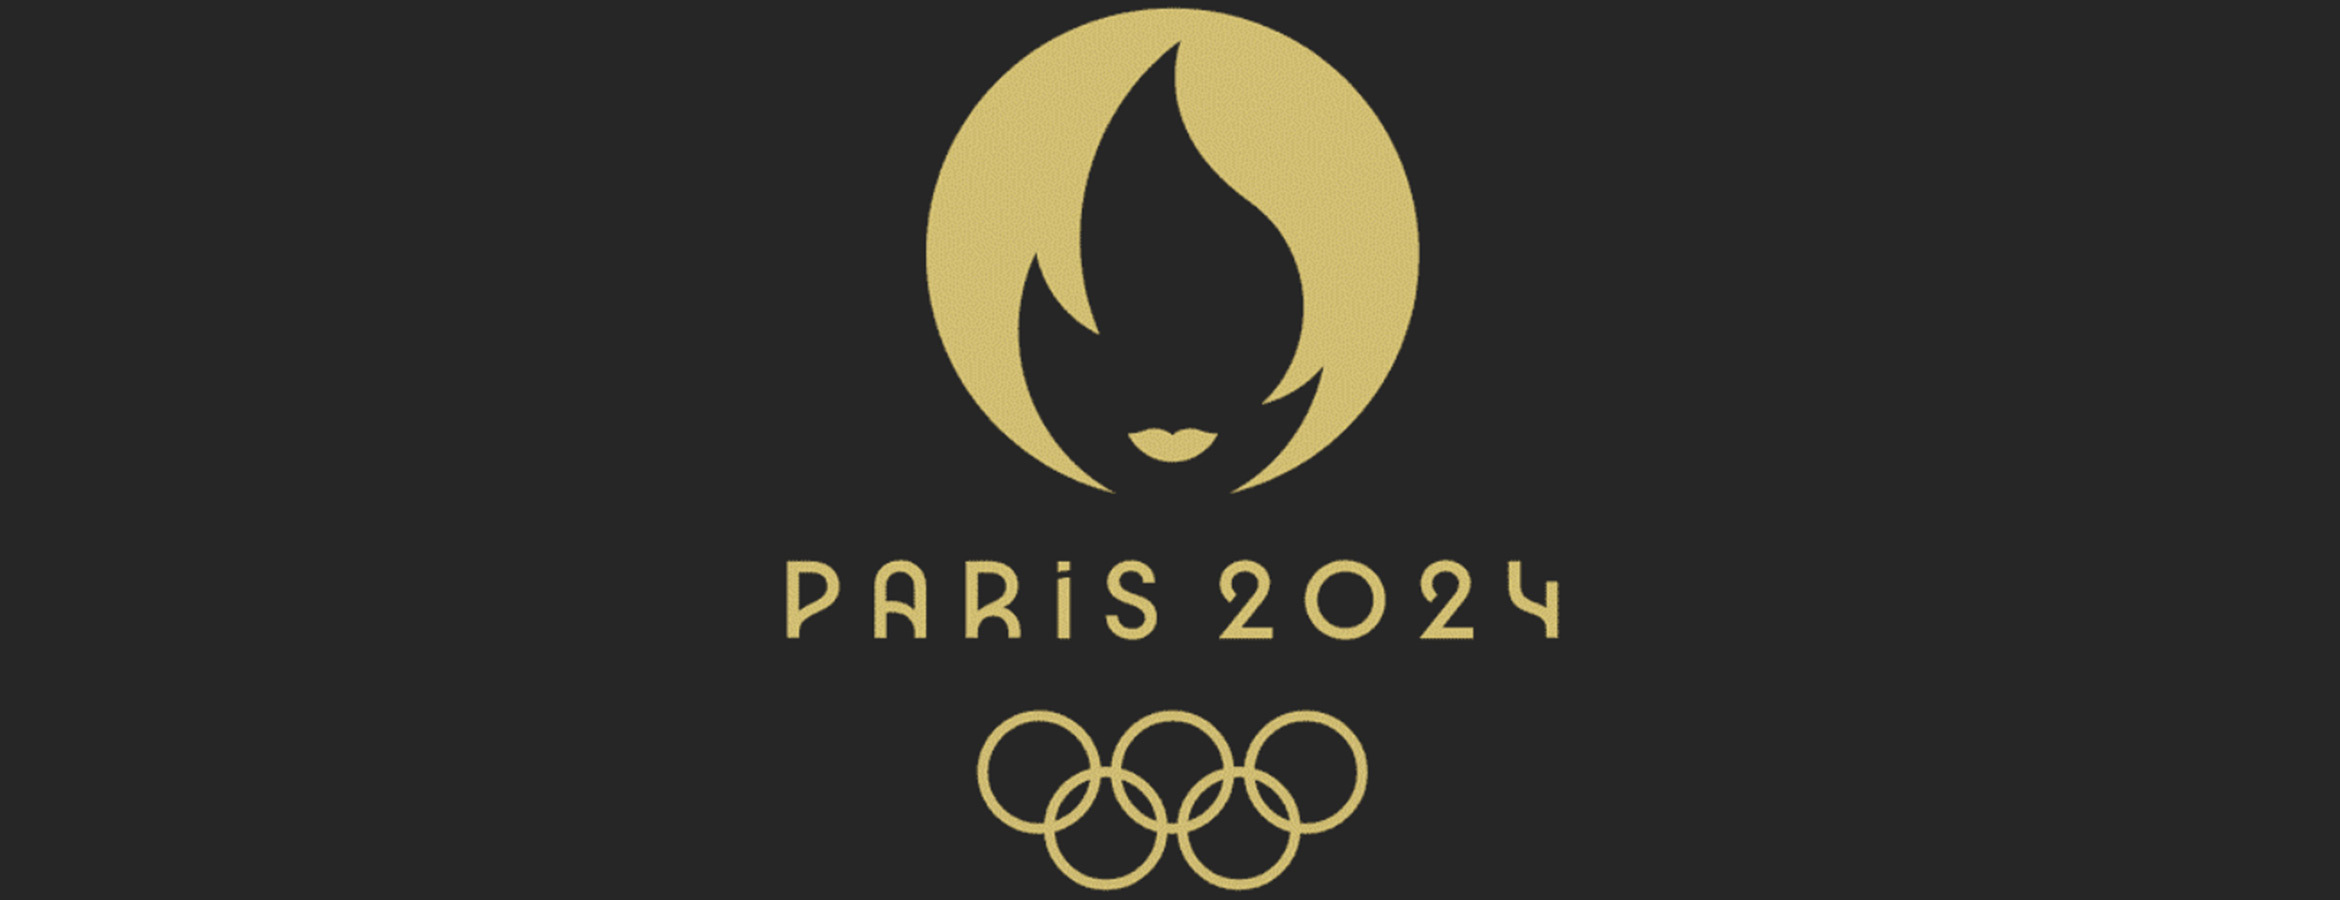 Symbole Officiel Des Jeux Olympiques 2024 Logo Officiel Des Jeux